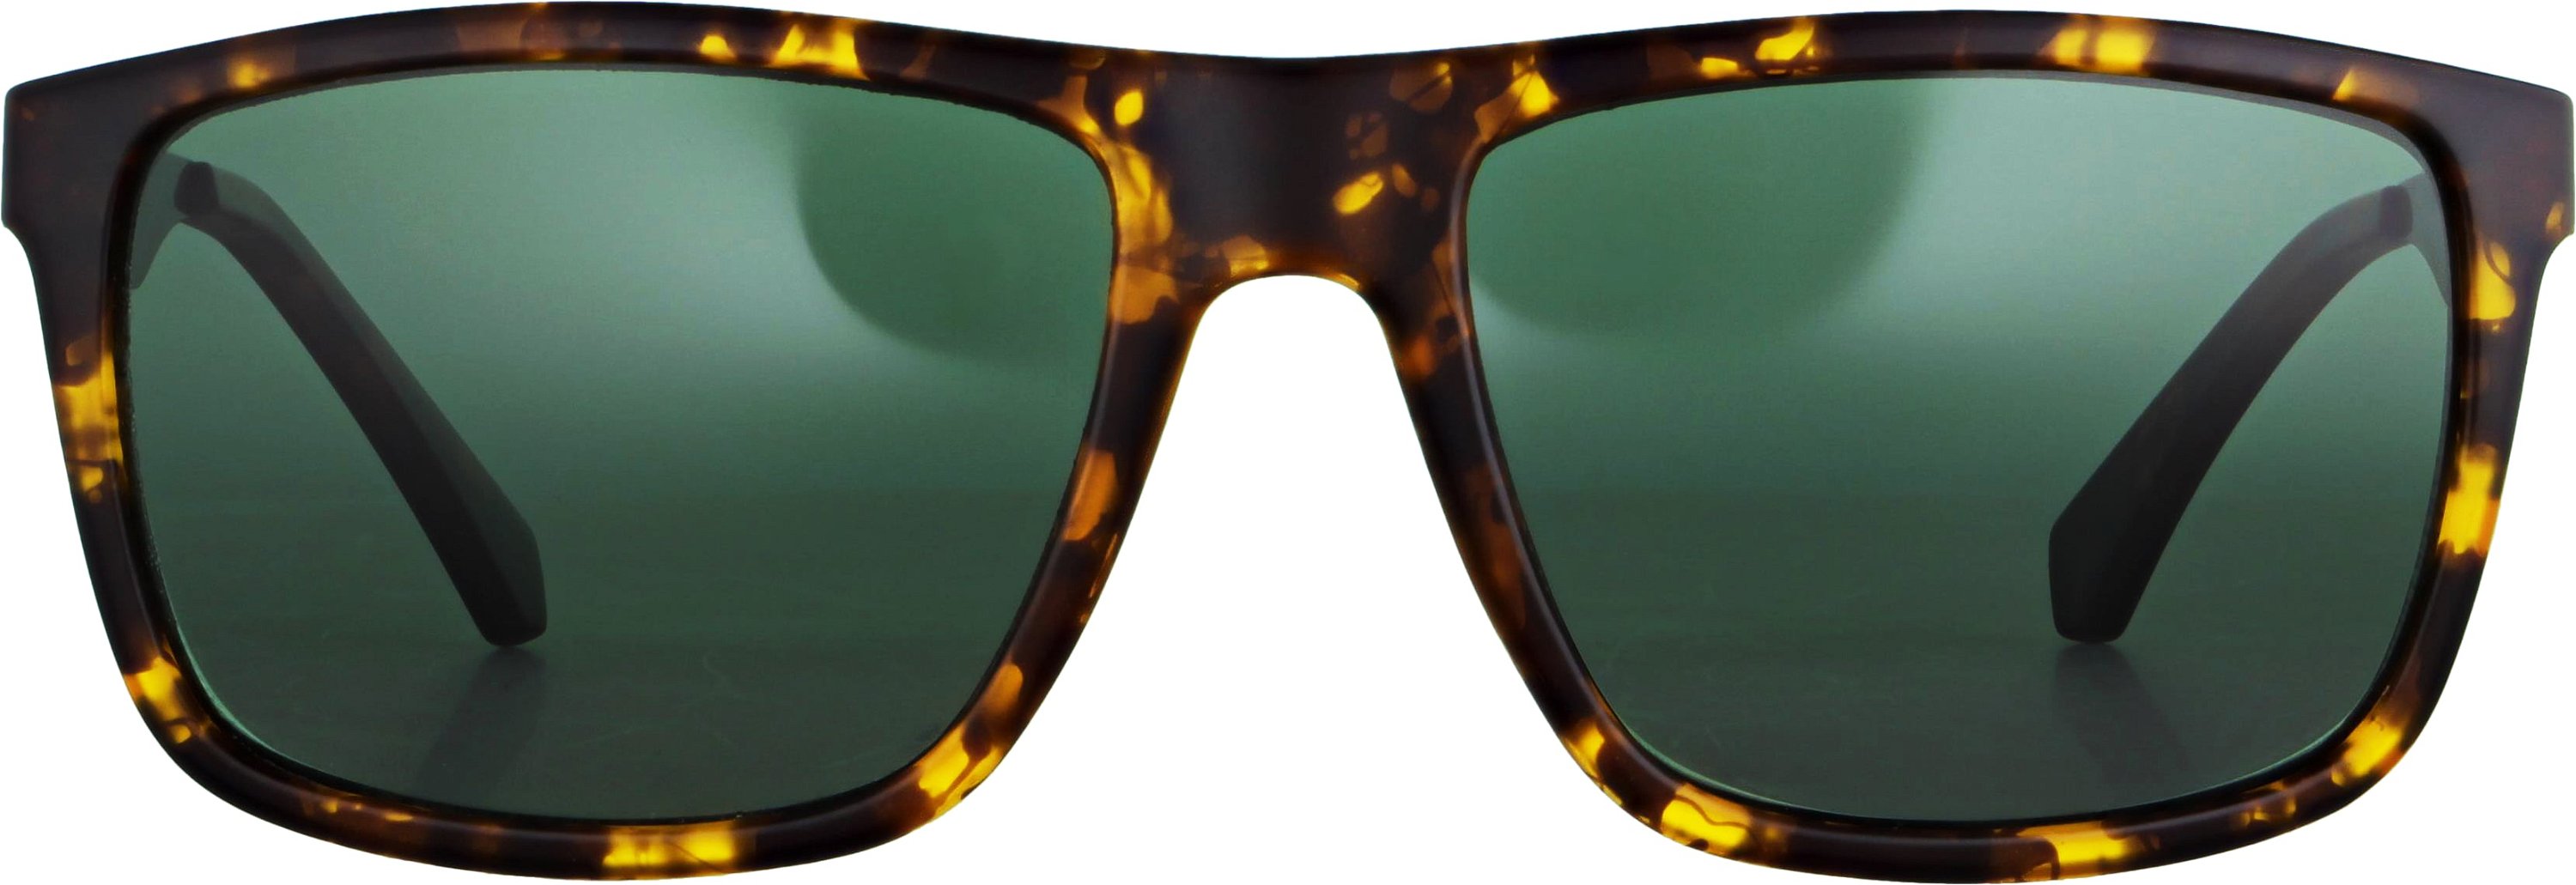 Das Bild zeigt die Sonnenbrille 141622 von der Marke Abele Optik in havanna Bügel: gold/havanna.